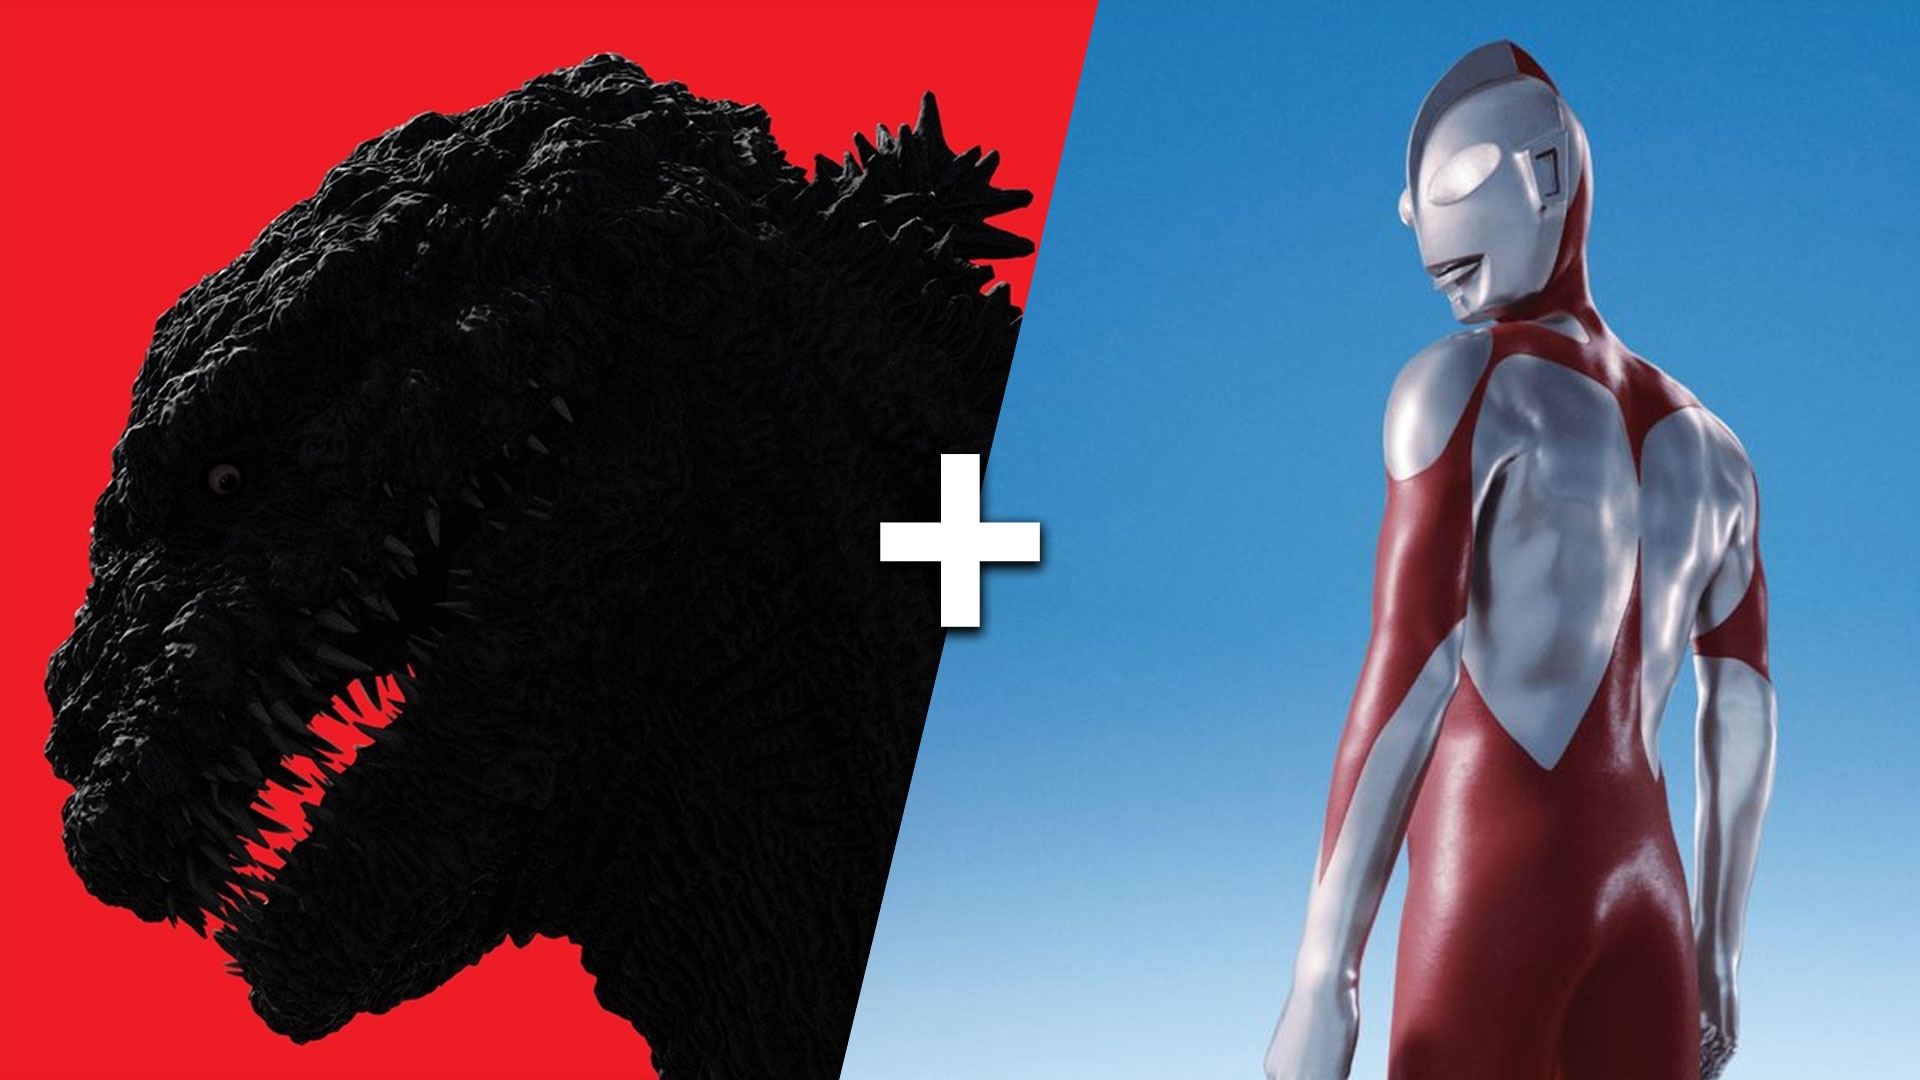 Shin Godzilla + Shin Ultraman